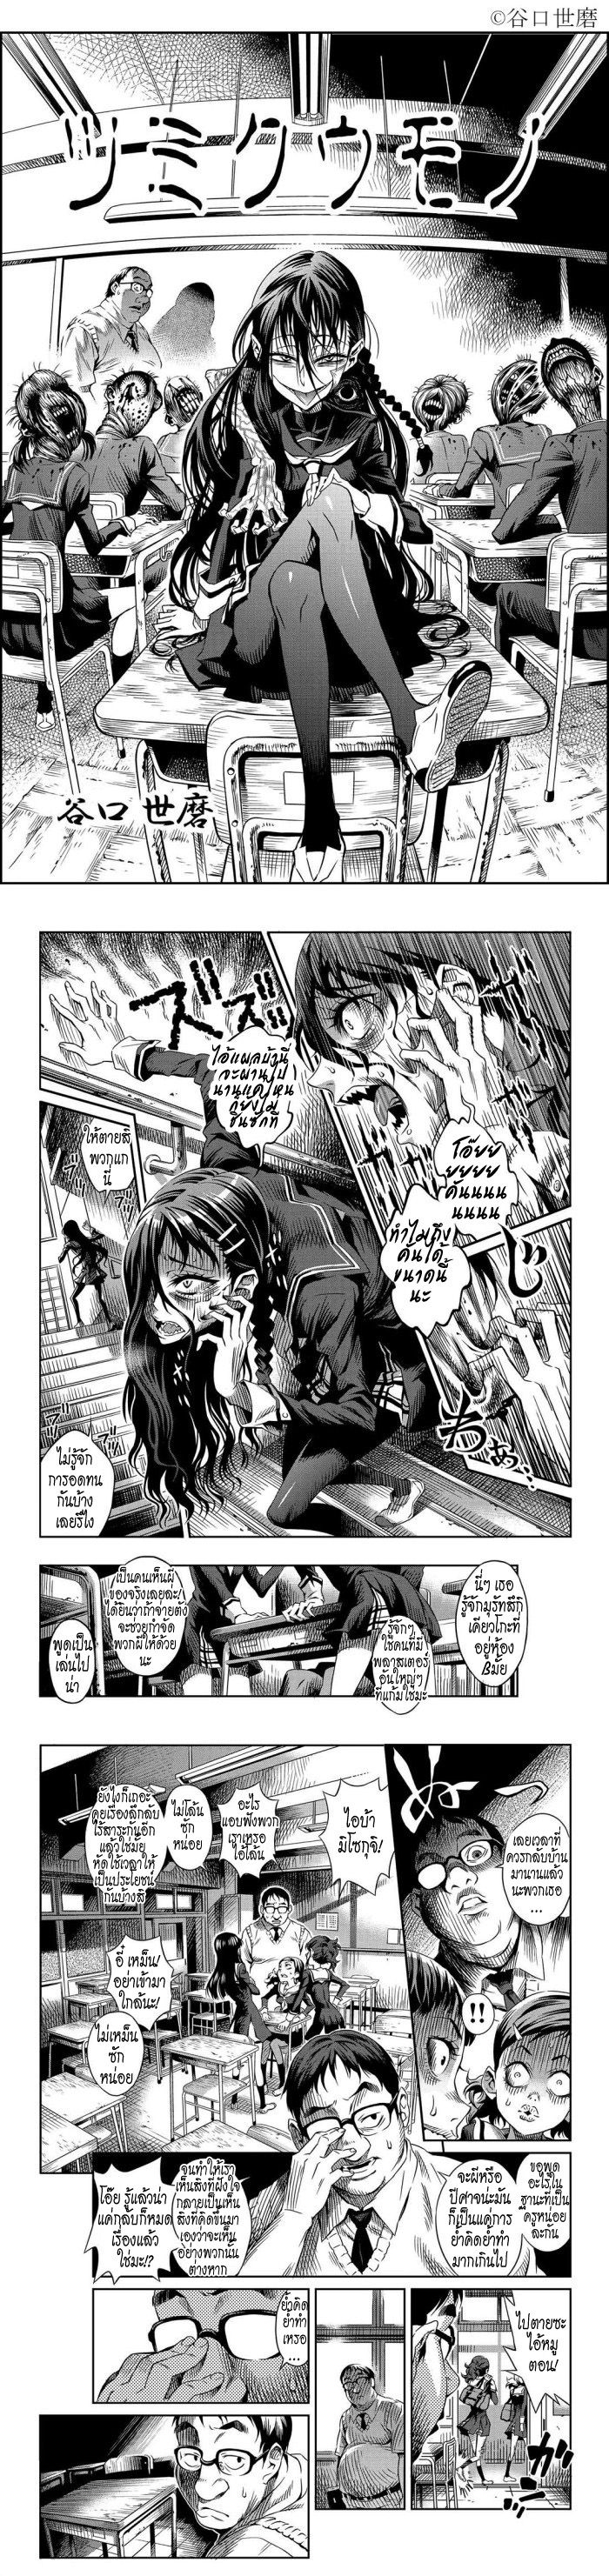 Tsumikumono - หน้า 1